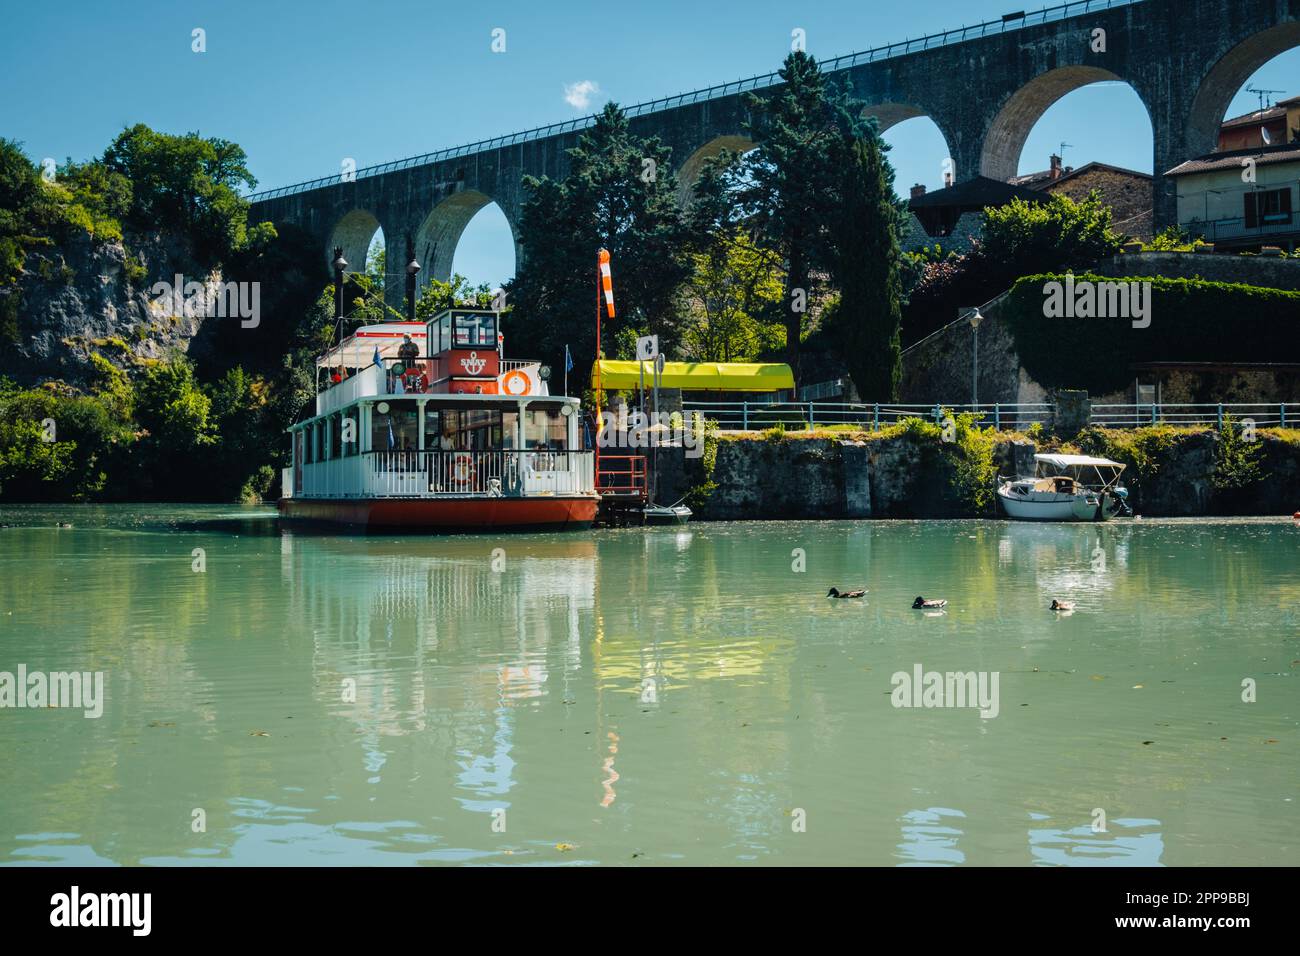 L'aqueduc enjambant la Bourne et un bateau à aubes dans le village de Saint Nazaire en Royans, dans les Alpes françaises (Drôme) Banque D'Images